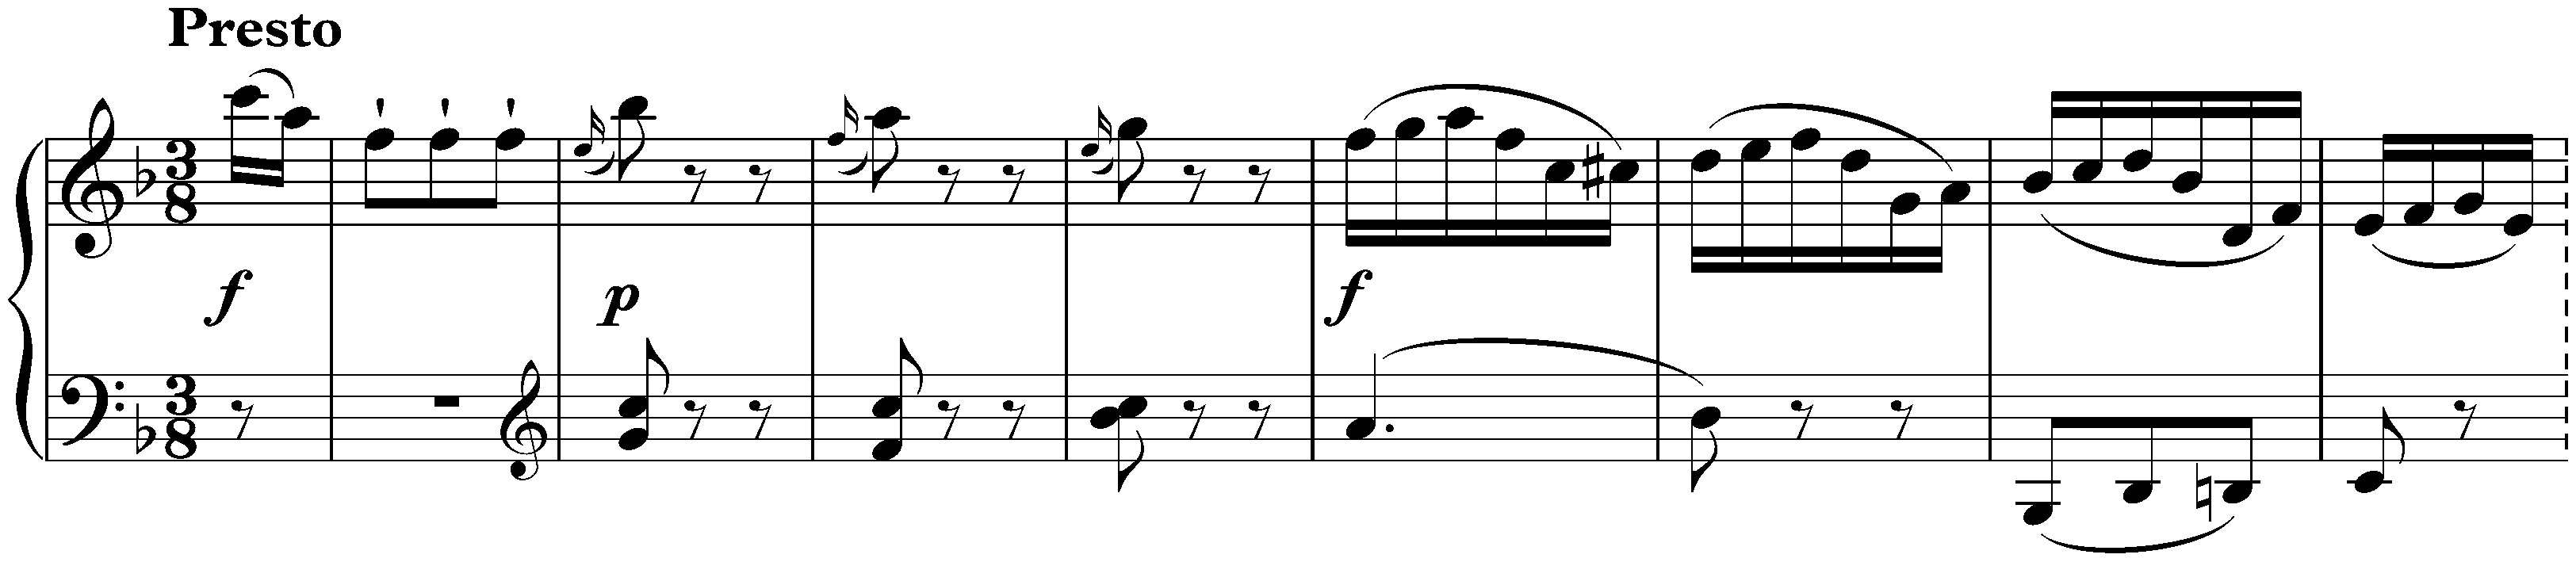 Sonata in F major, KV 280/189e; 3. Presto